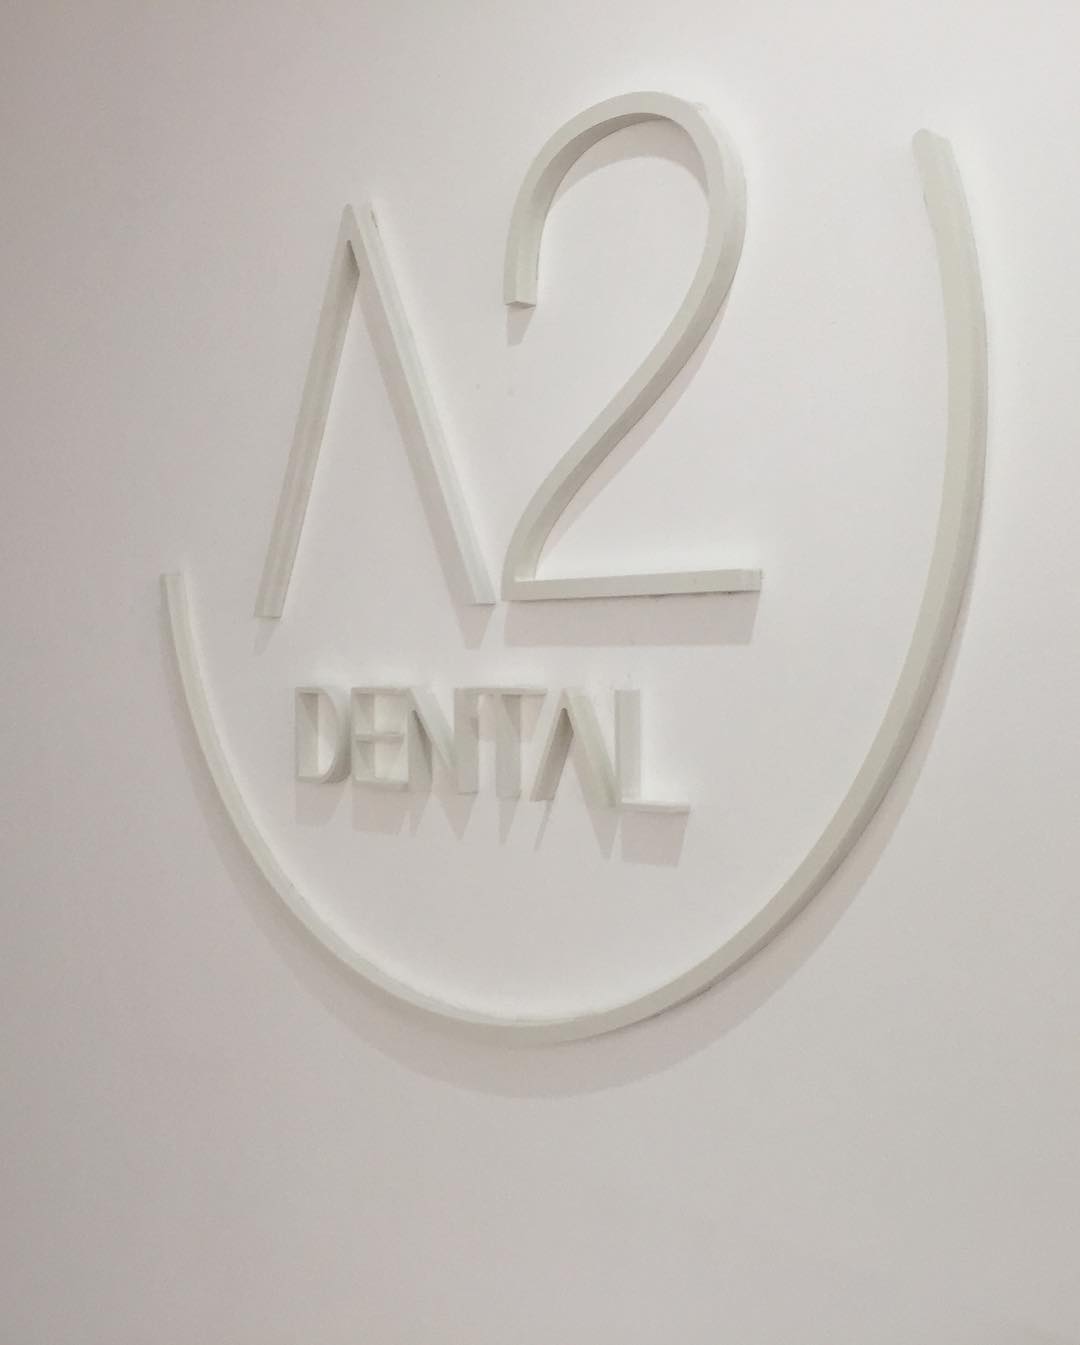 Letras corpóreas en PVC A2 Dental Mallorca